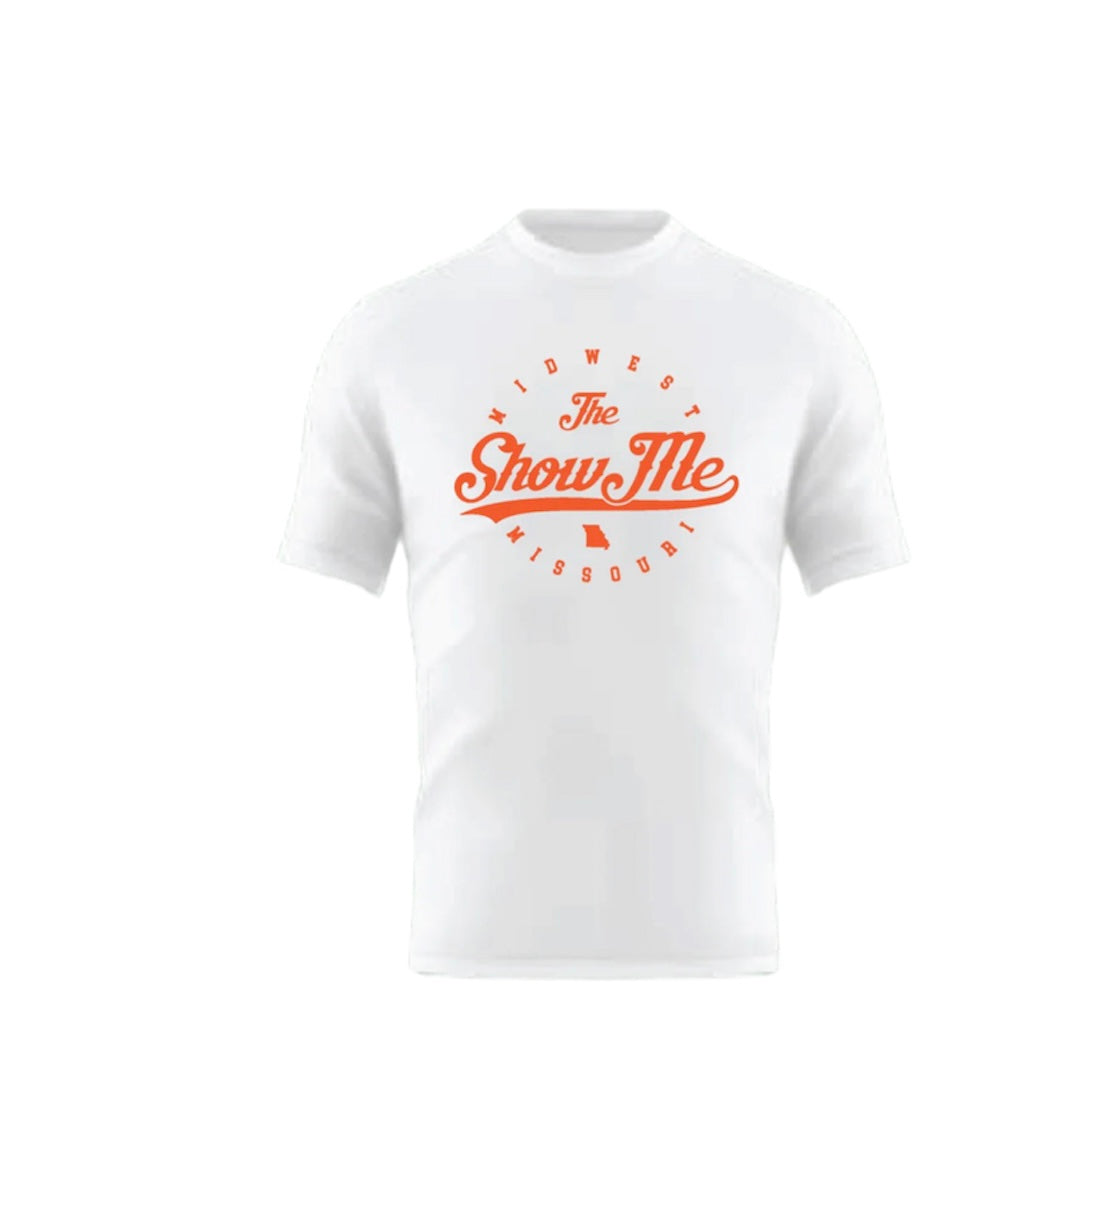 White and Orange(Glow) Heavyweight Graphic T-shirt